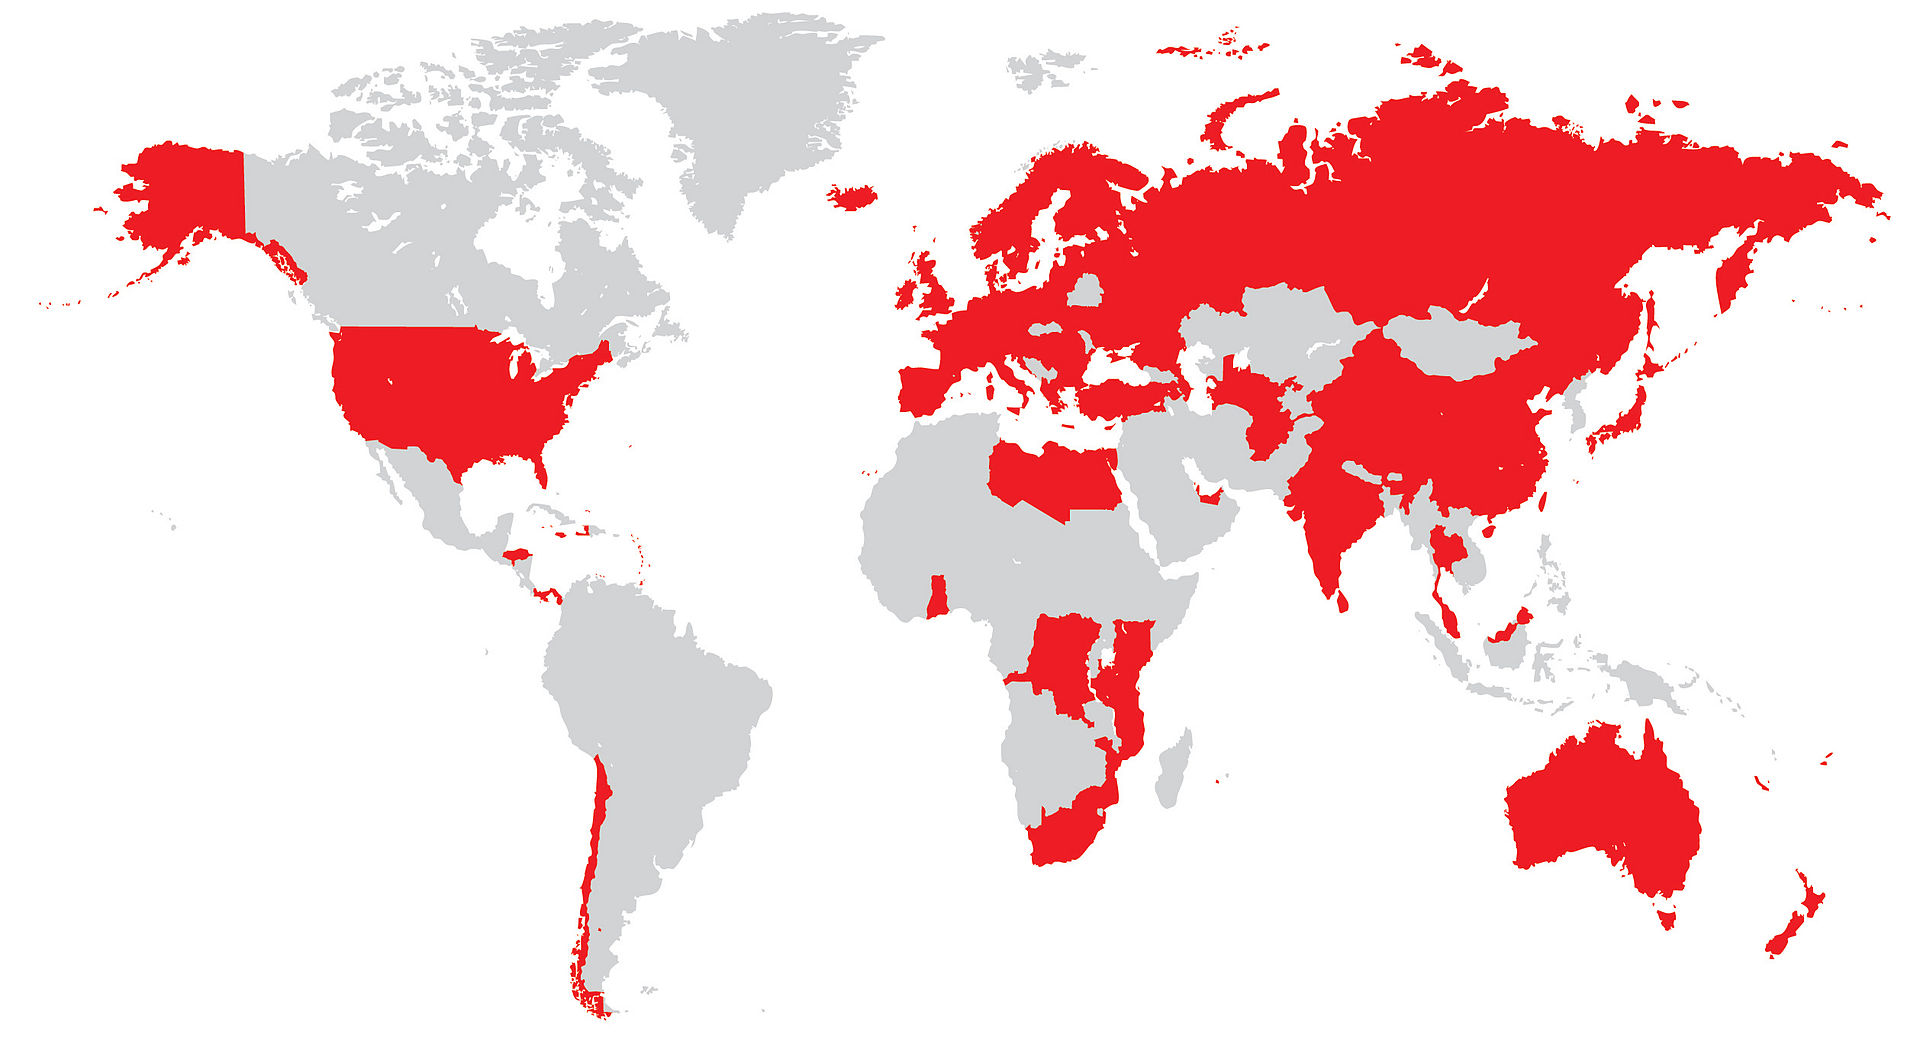 تمام کشورهایی که وودافون در آن‌ها فعالیت می‌کند، با رنگ قرمز مشخص شده است.